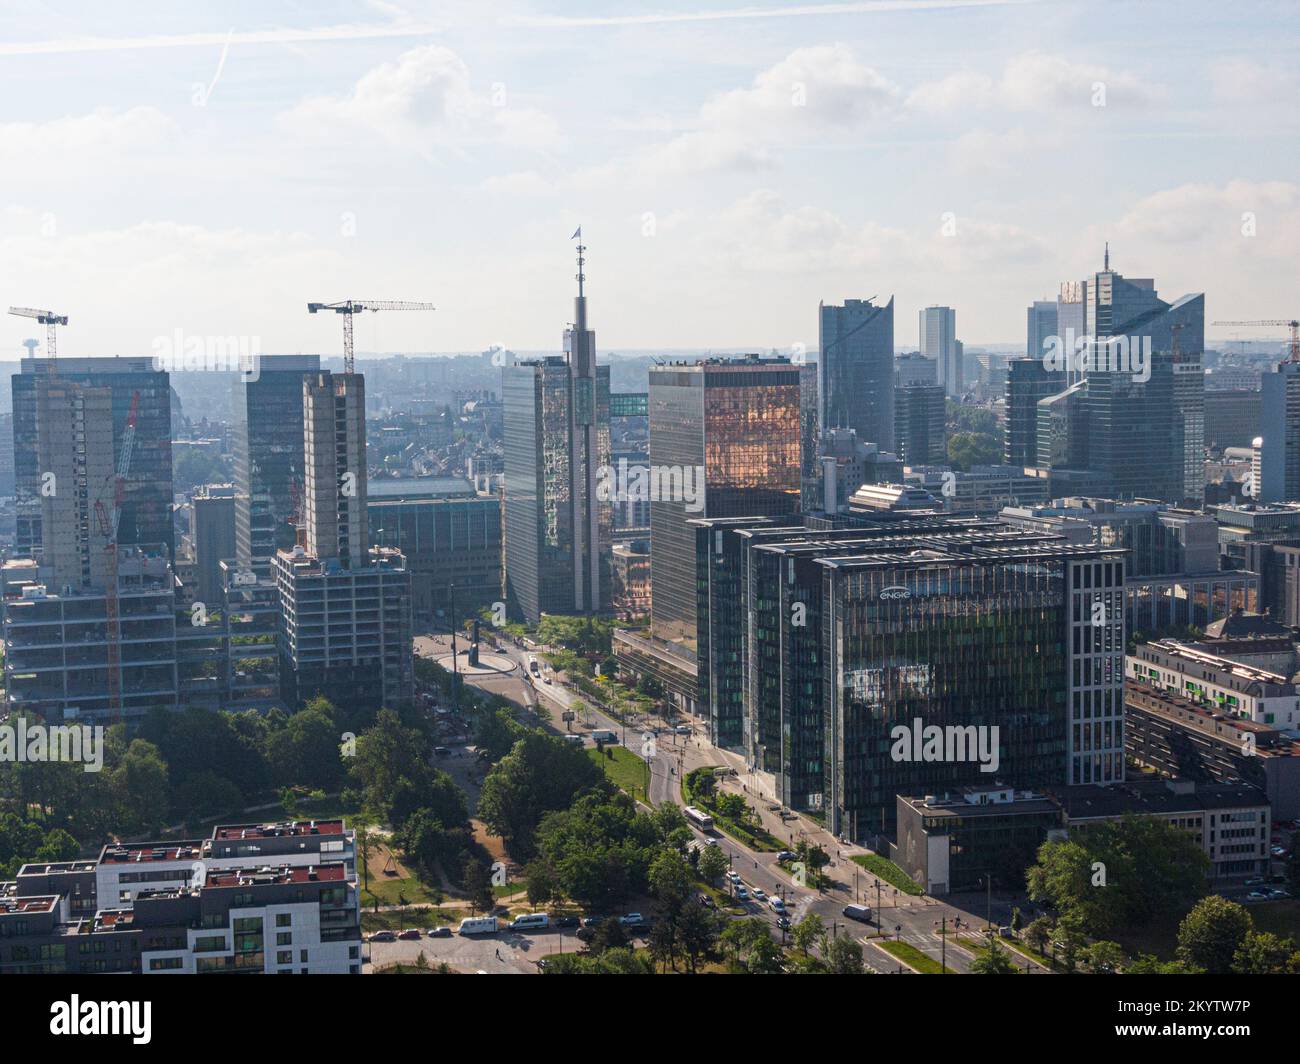 Bruxelles, Belgique - 12 mai 2022 : paysage urbain de la ville de Bruxelles. Quartier des bureaux mélangé à des bâtiments résidentiels dans un quartier résidentiel. Banque D'Images